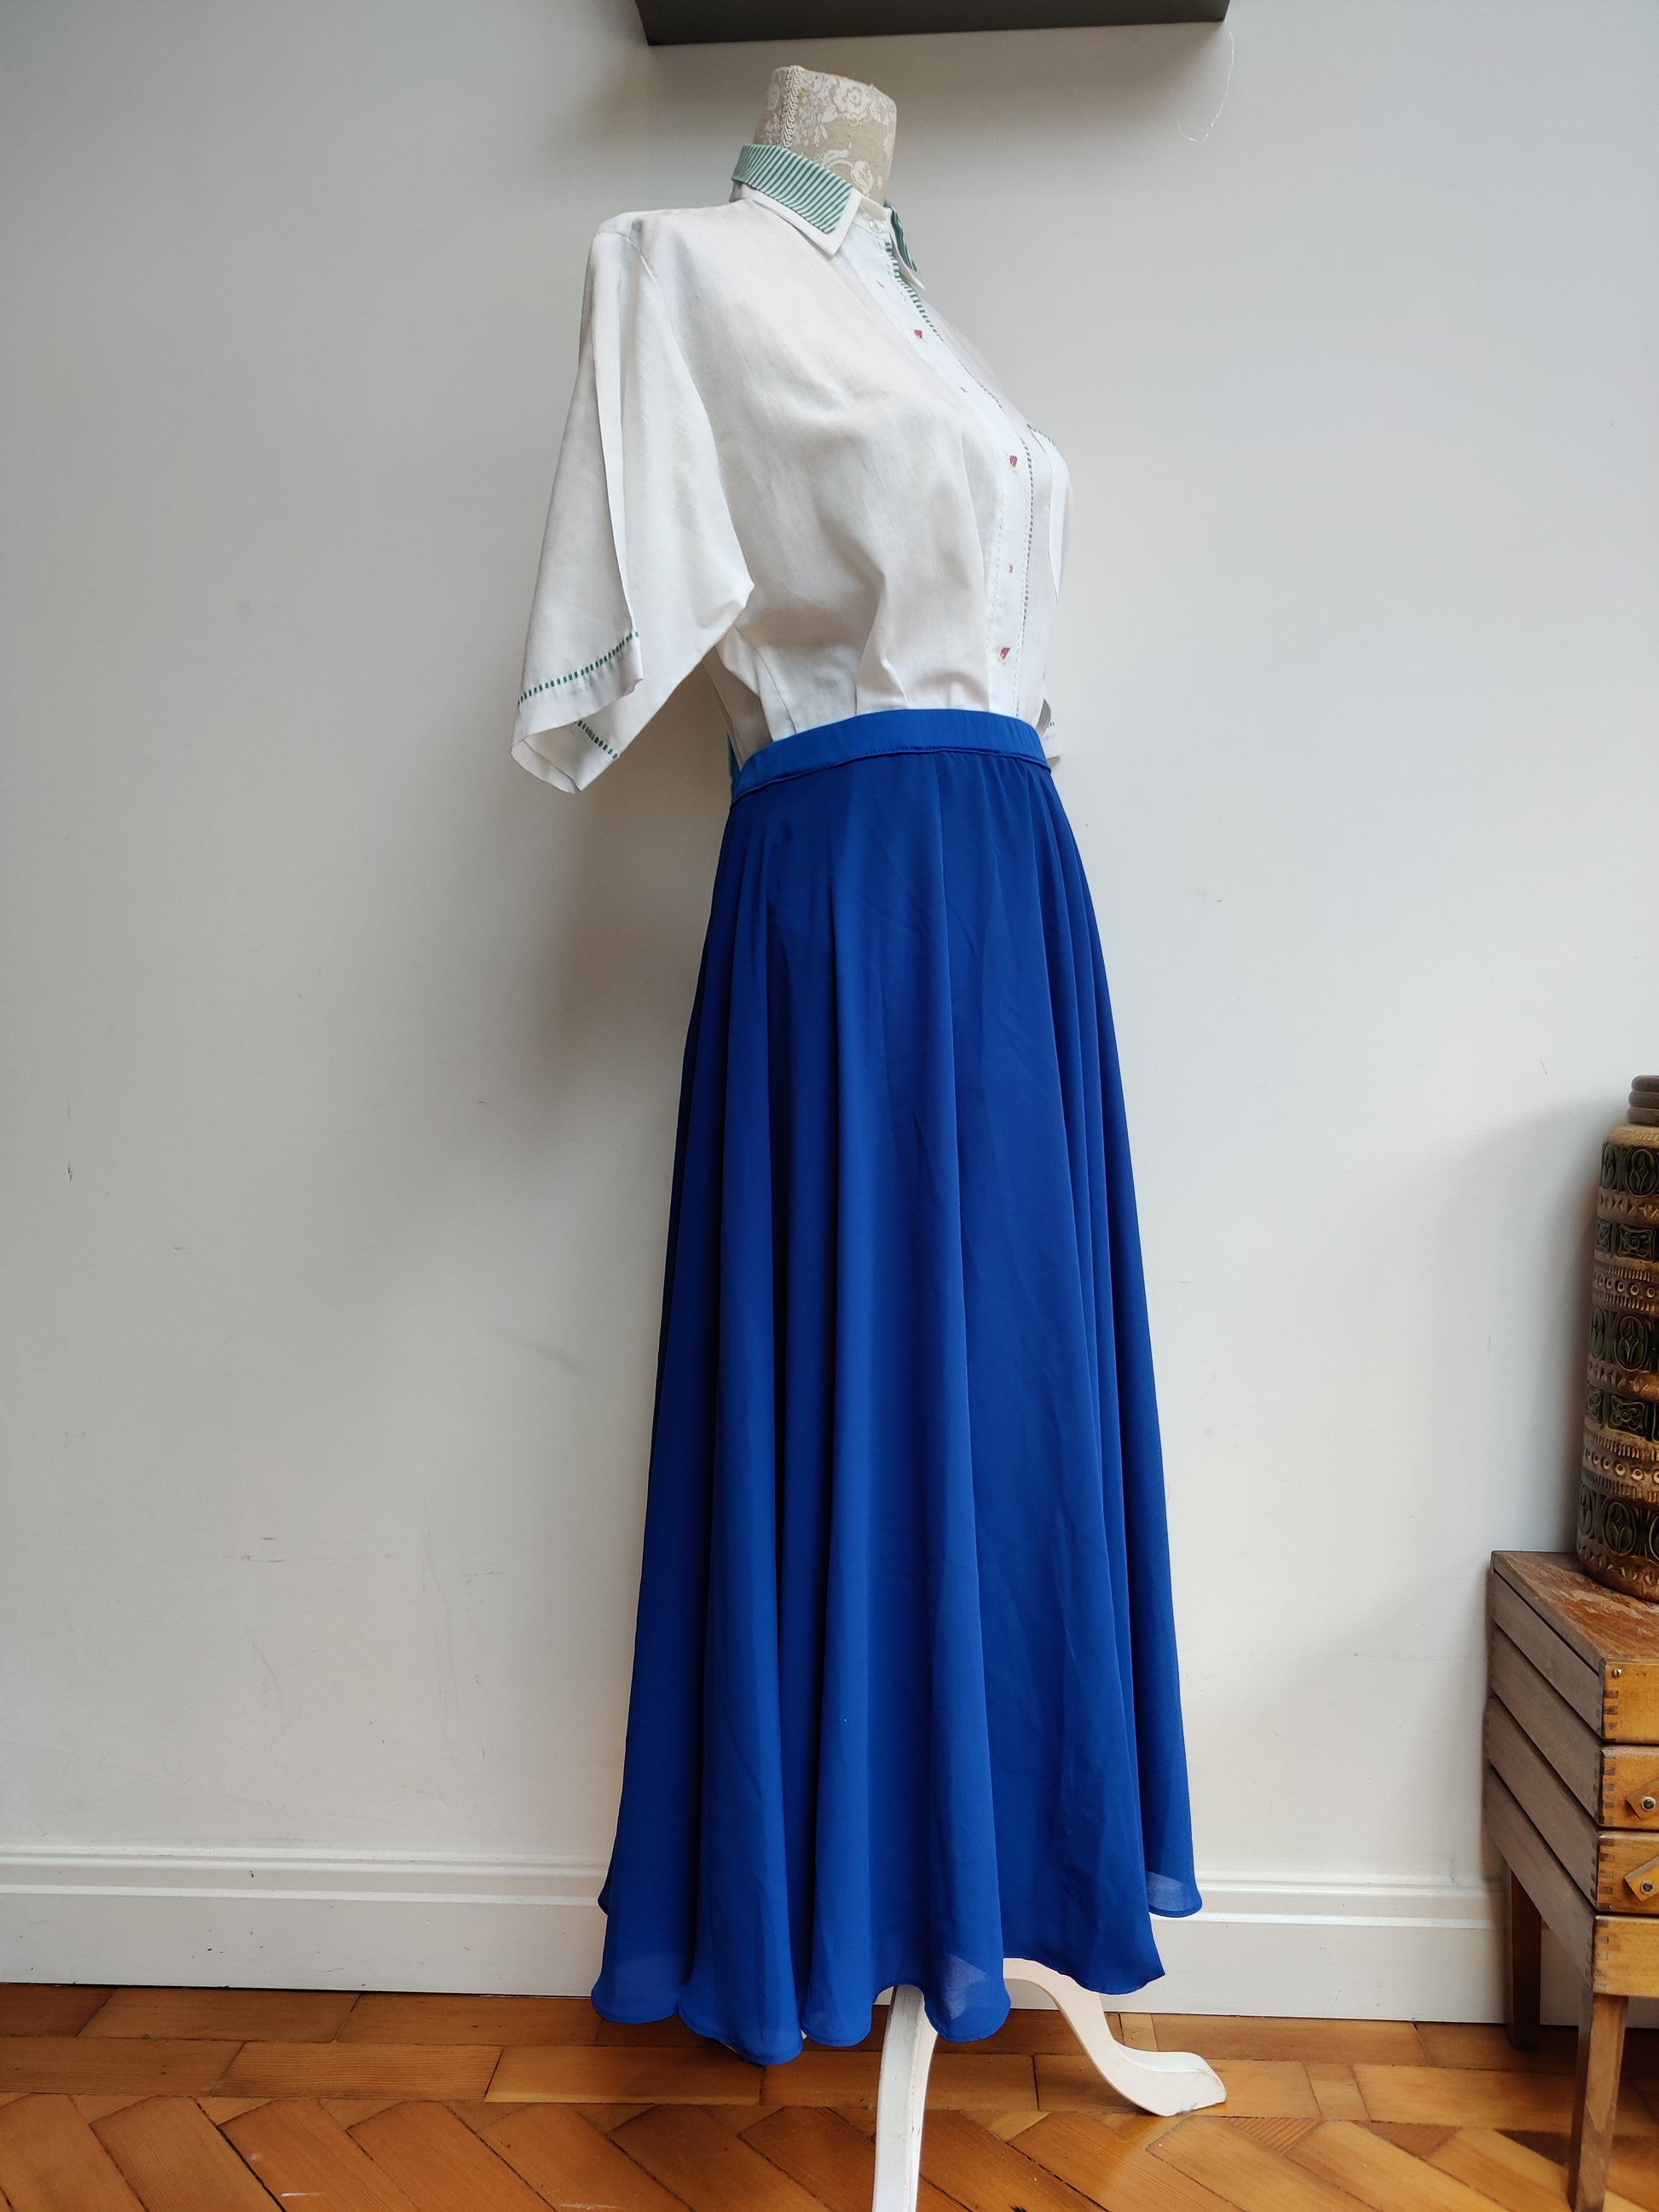 Blue flared skirt. 16